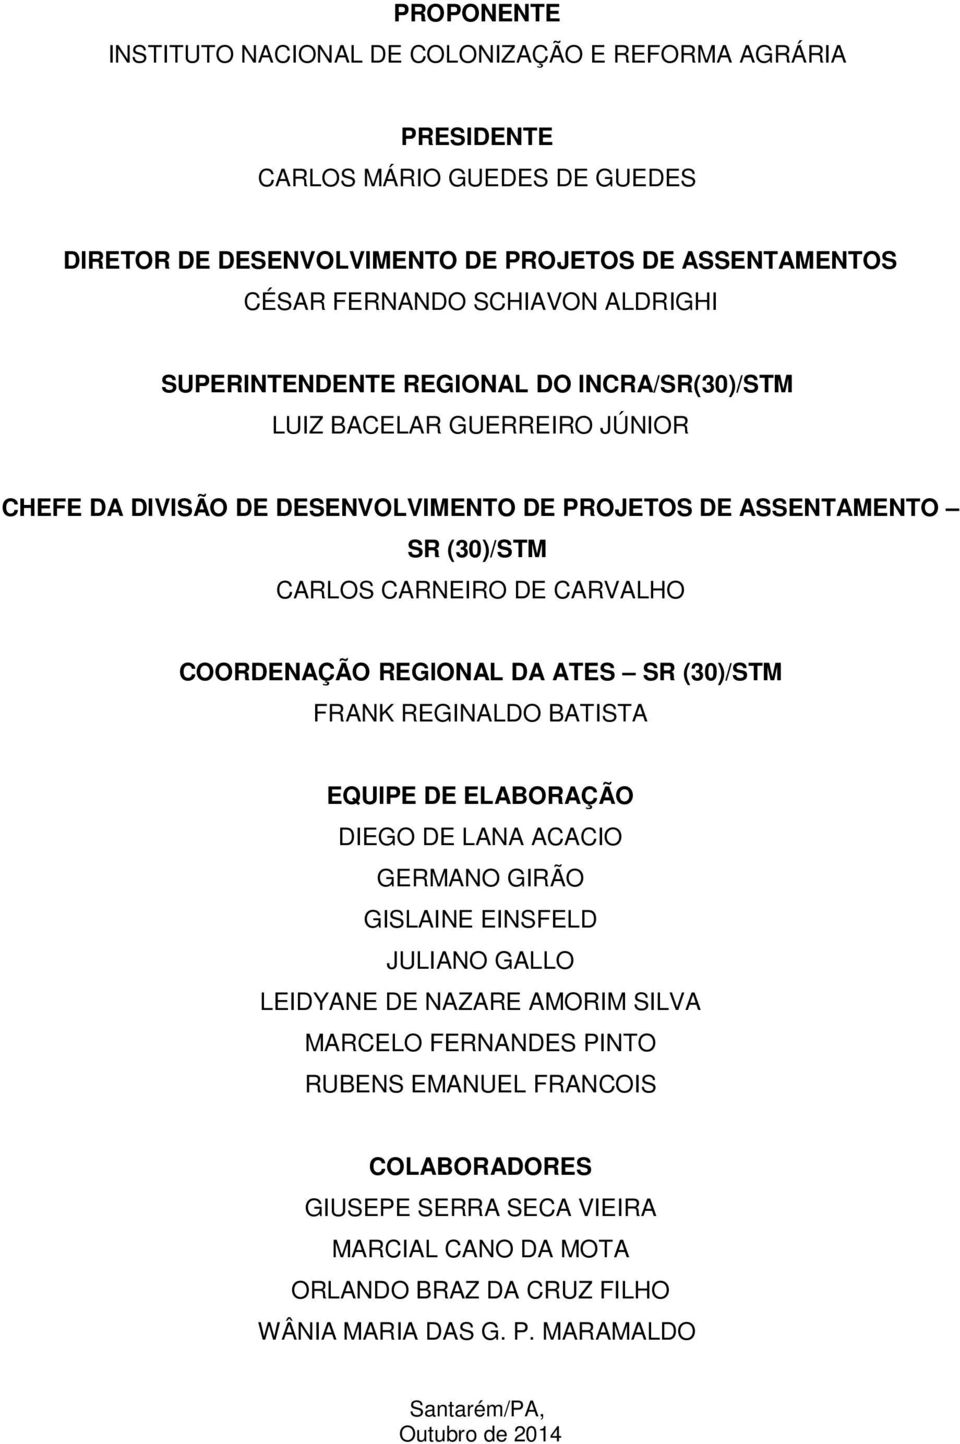 COORDENAÇÃO REGIONAL DA ATES SR (30)/STM FRANK REGINALDO BATISTA EQUIPE DE ELABORAÇÃO DIEGO DE LANA ACACIO GERMANO GIRÃO GISLAINE EINSFELD JULIANO GALLO LEIDYANE DE NAZARE AMORIM SILVA